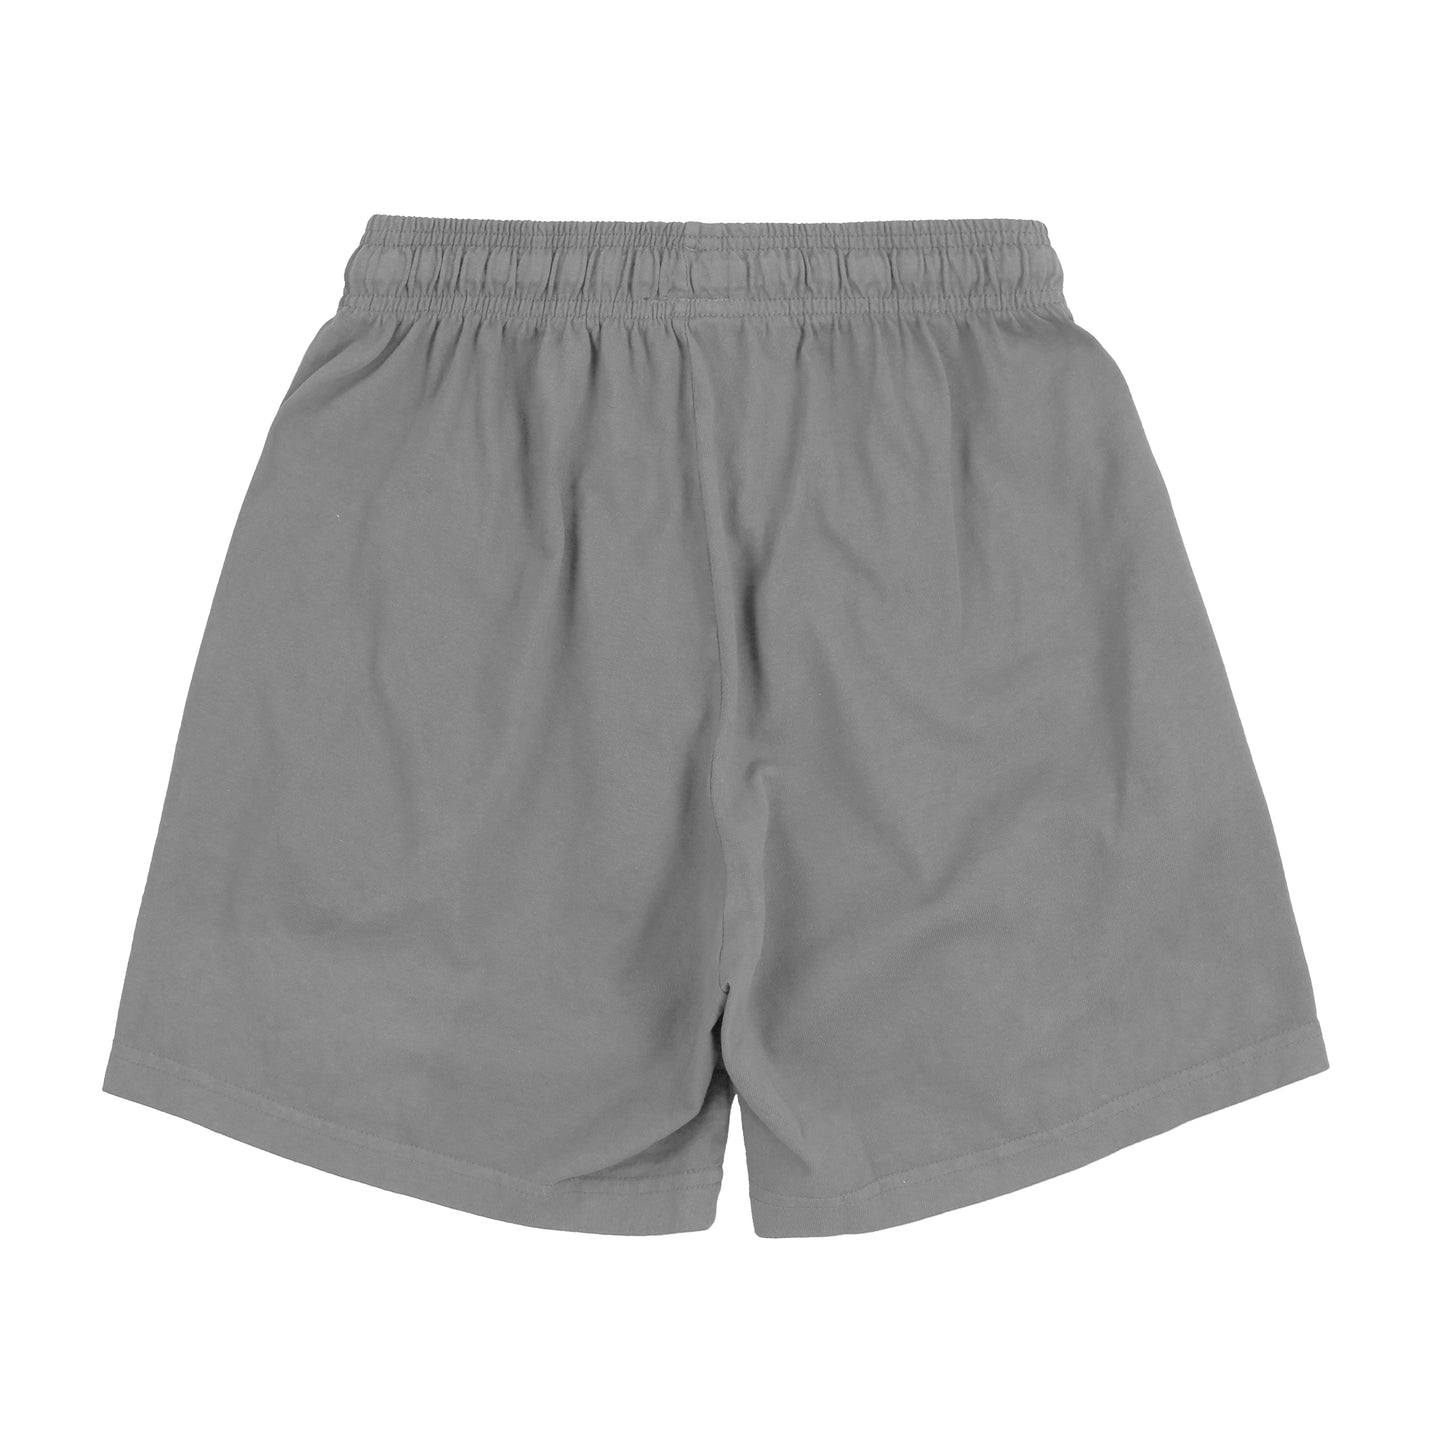 Glo Sun Font Shorts (Grey)